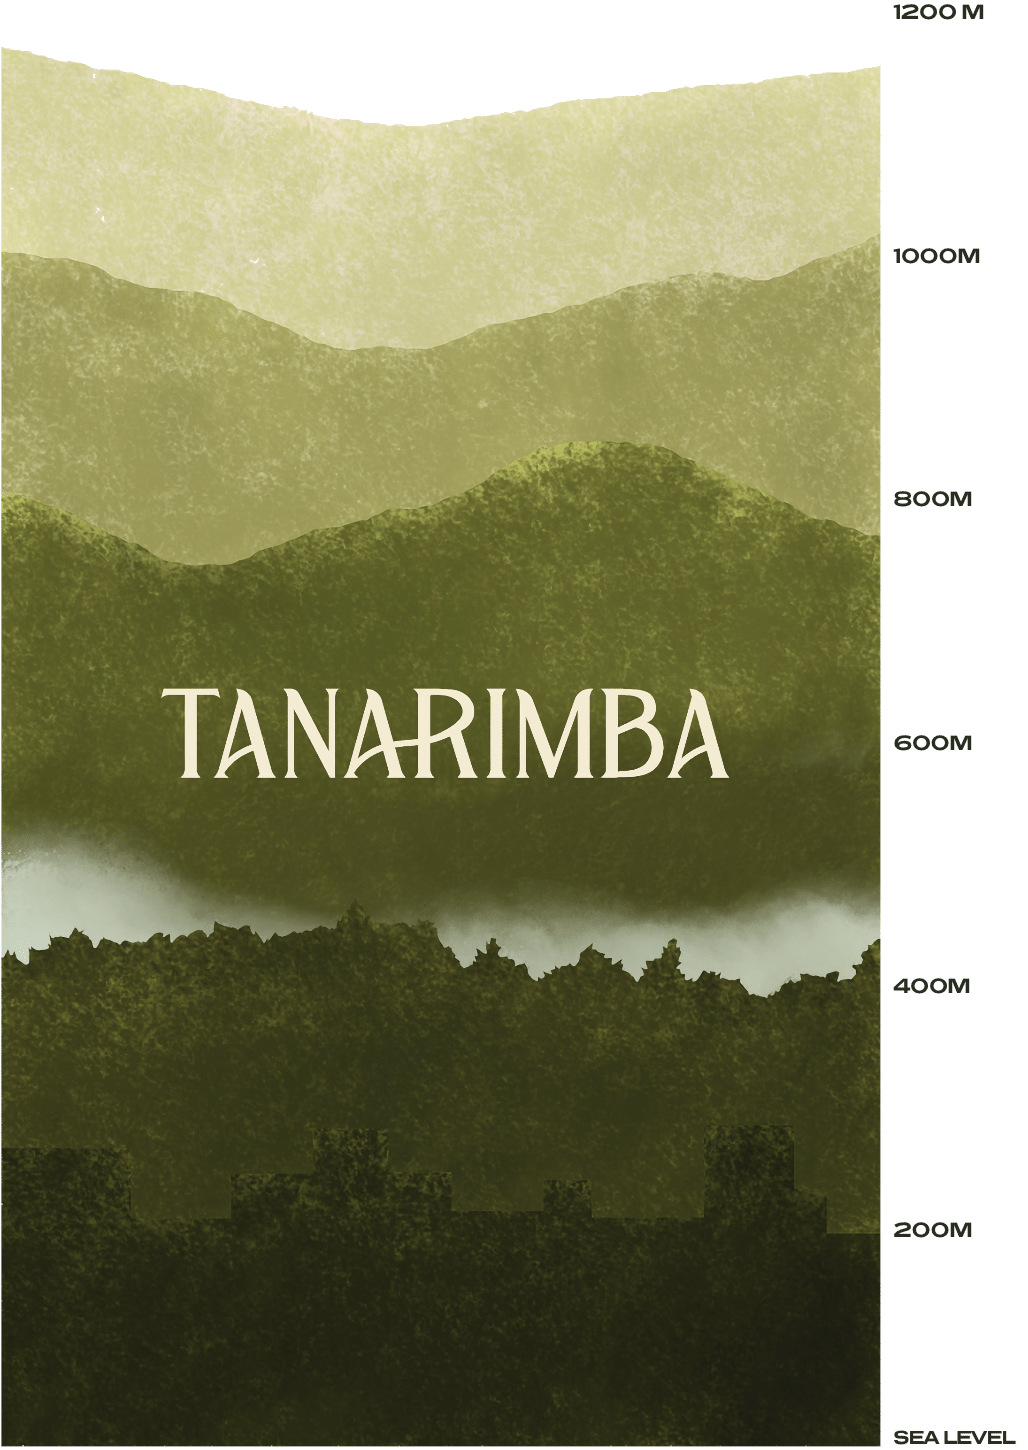 Elevation section of tanarimba